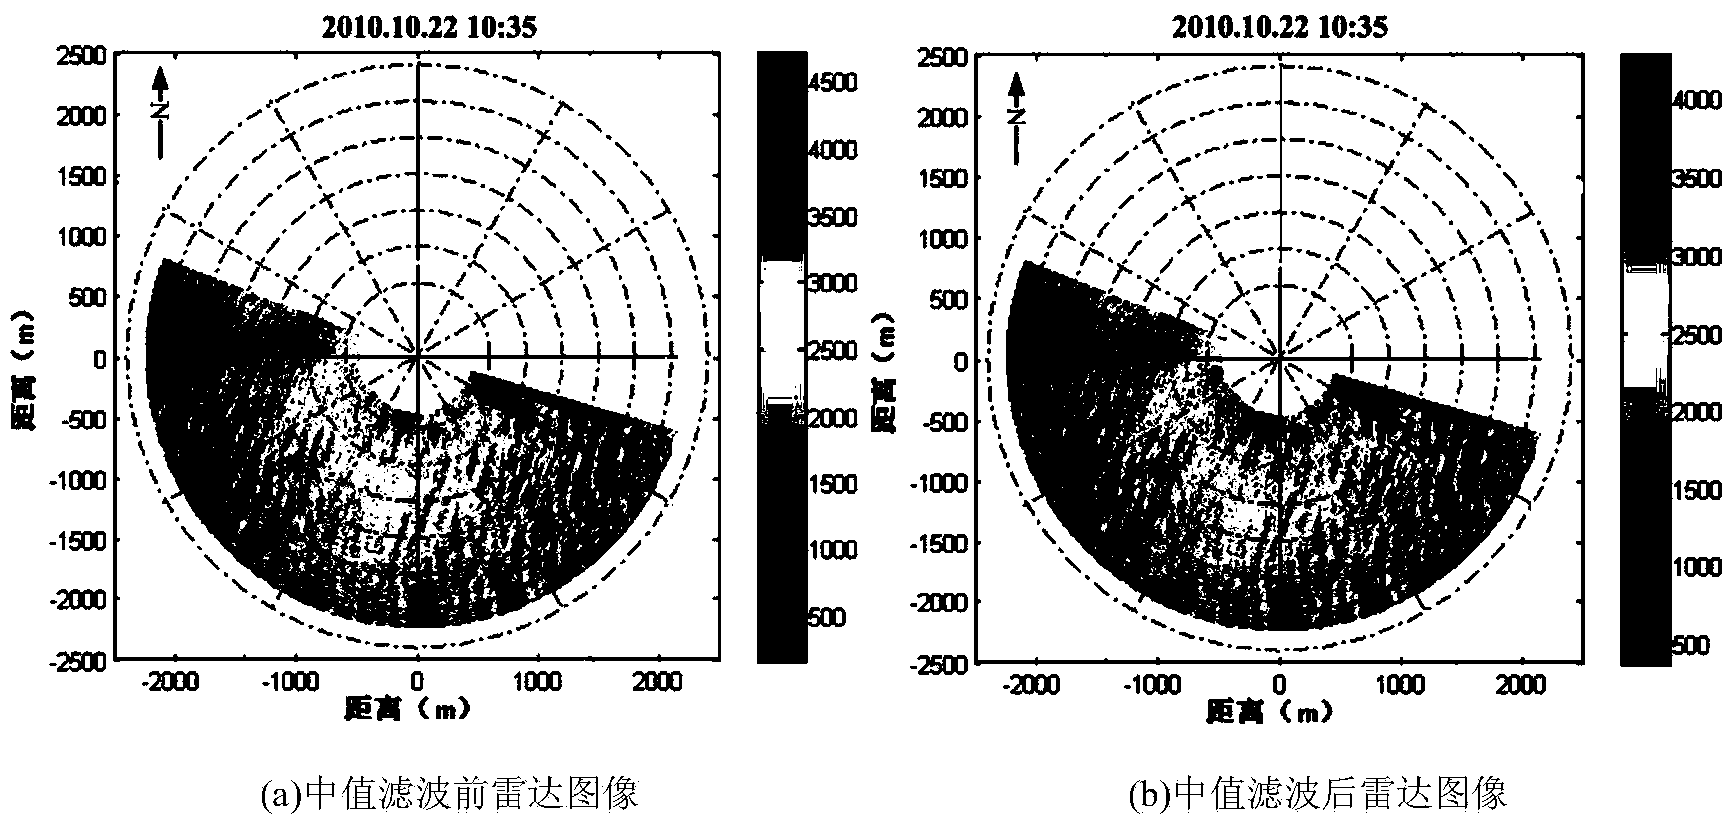 Navigation radar image sea surface wind direction inversion method based on wave number energy spectrum